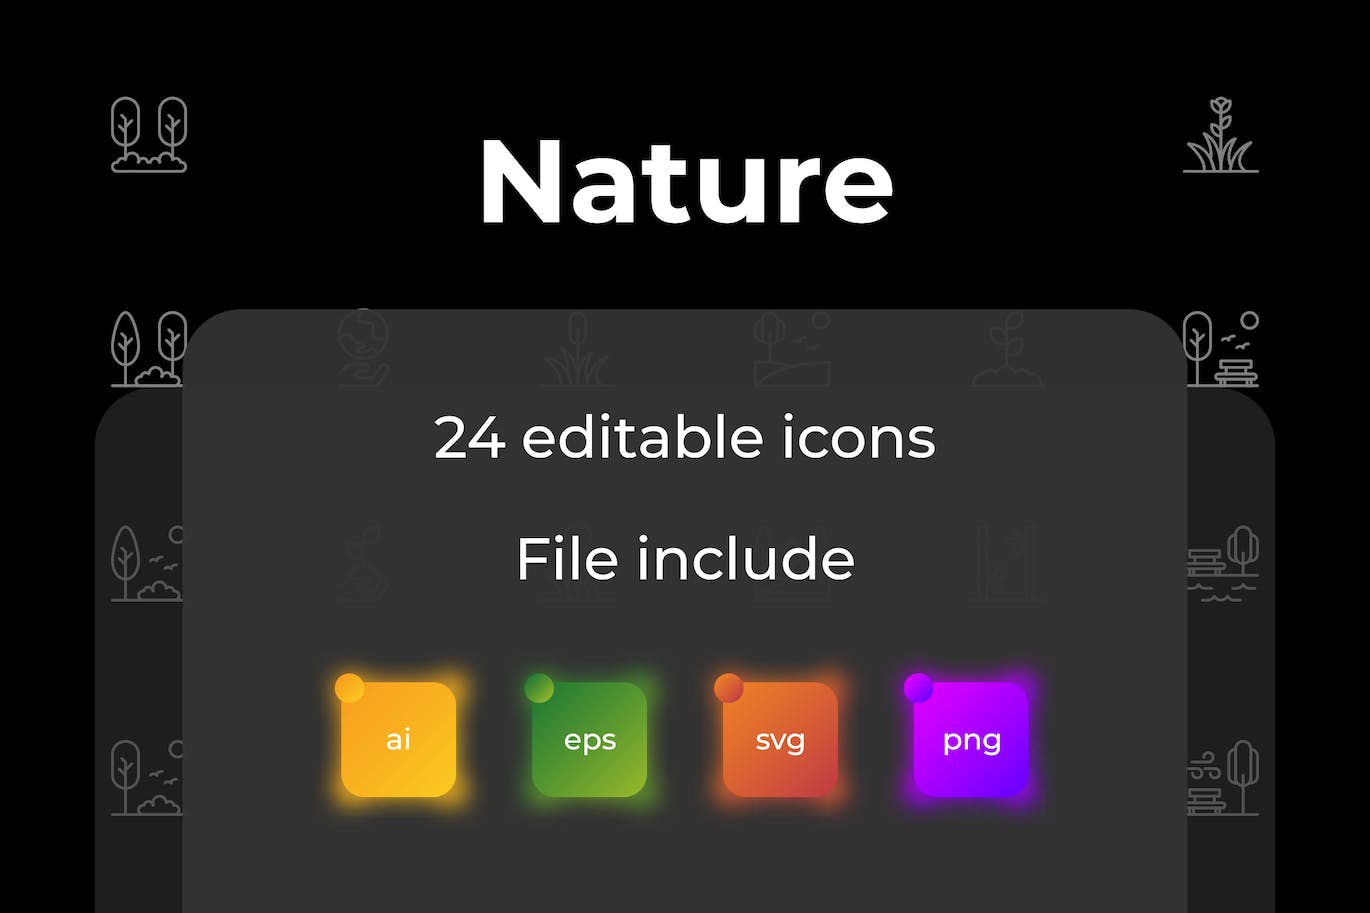 自然主题轮廓图标集 Nature Outline Icon Set 图标素材 第1张